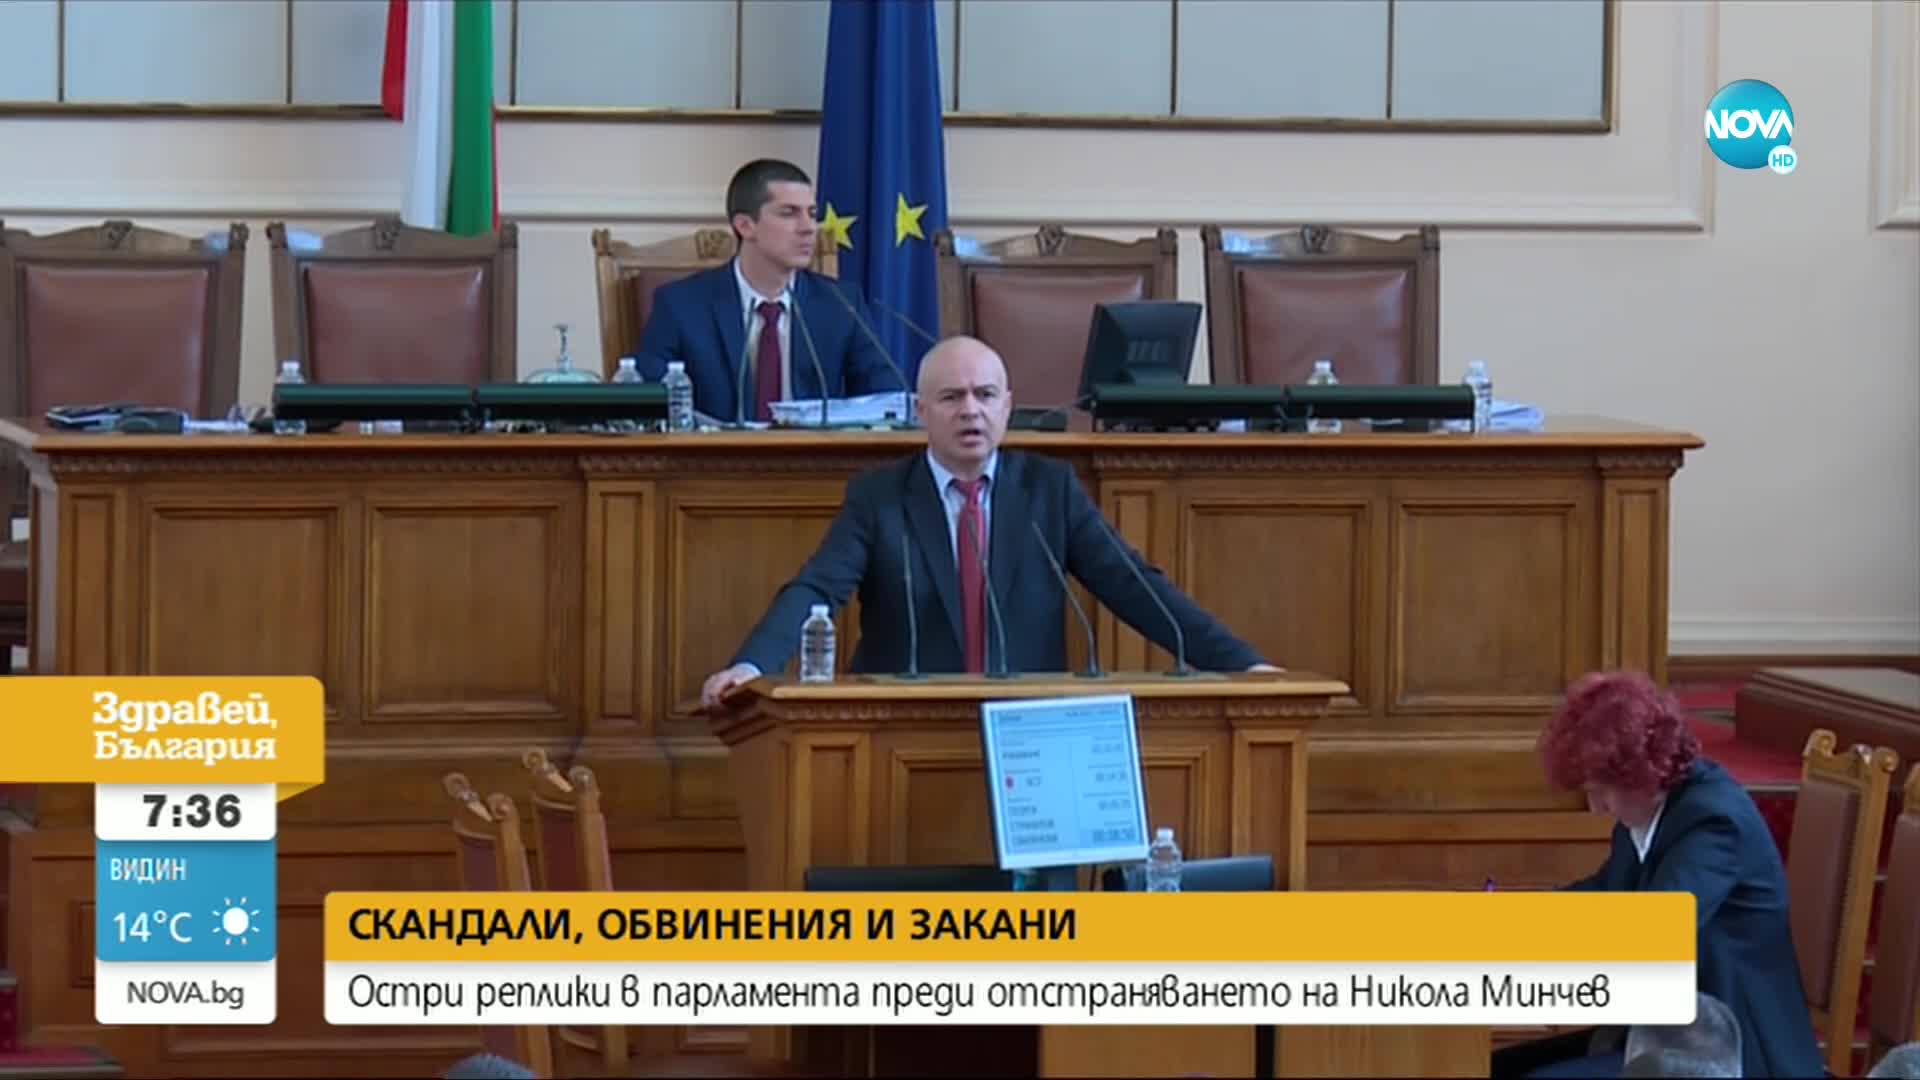 Остри реплики в парламента преди отстраняването на Никола Минчев